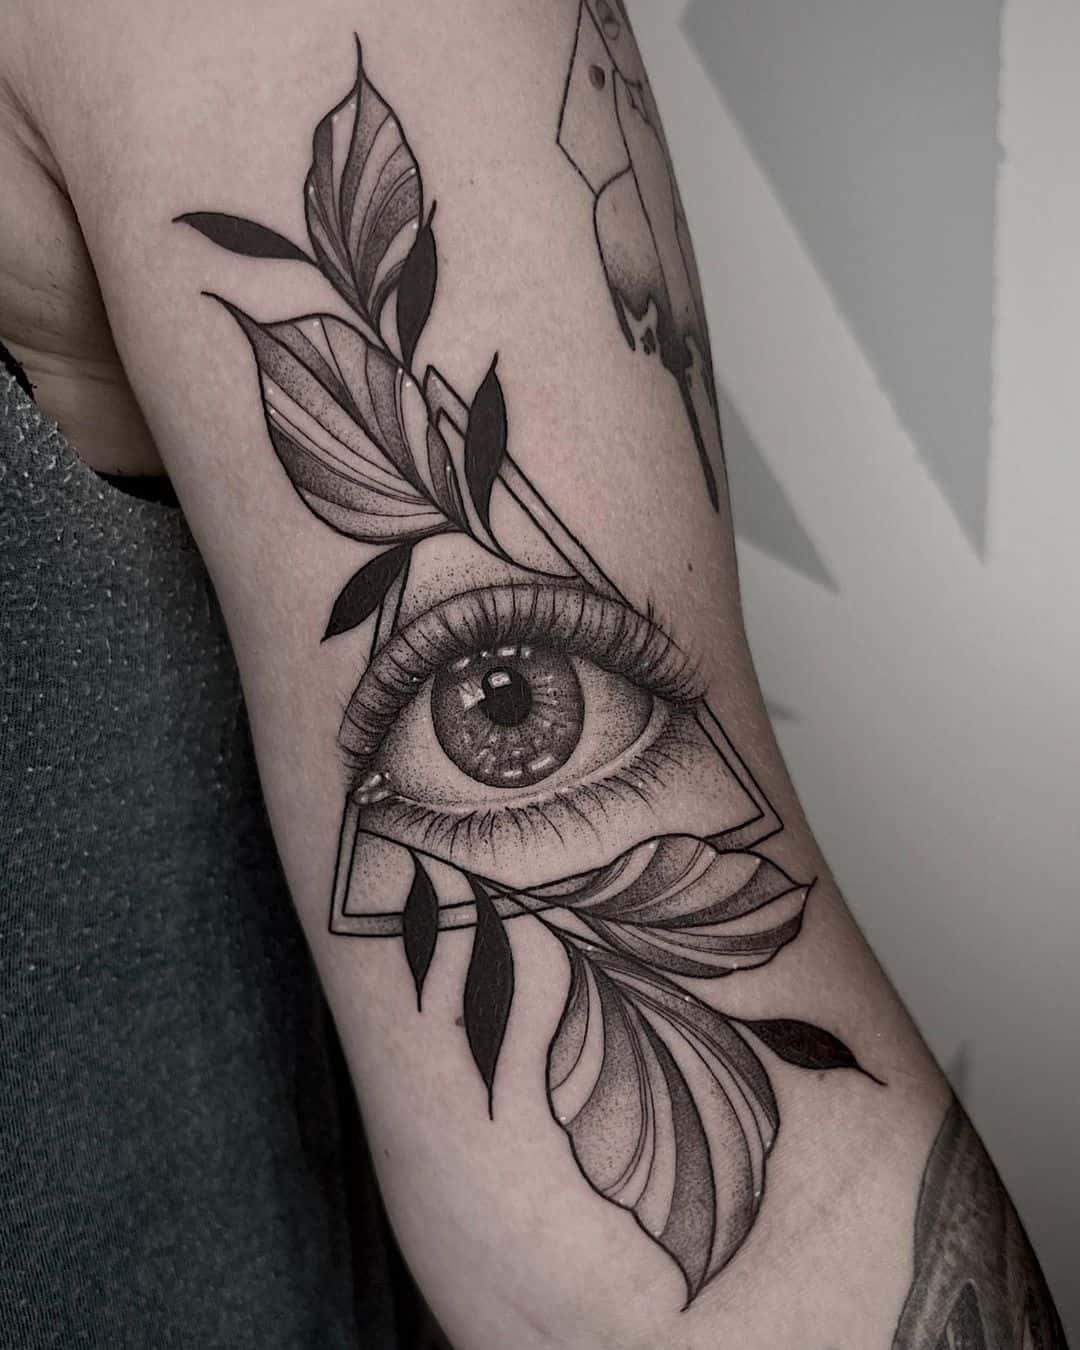 Realistic eye tattoo by brii.fletchtattoos